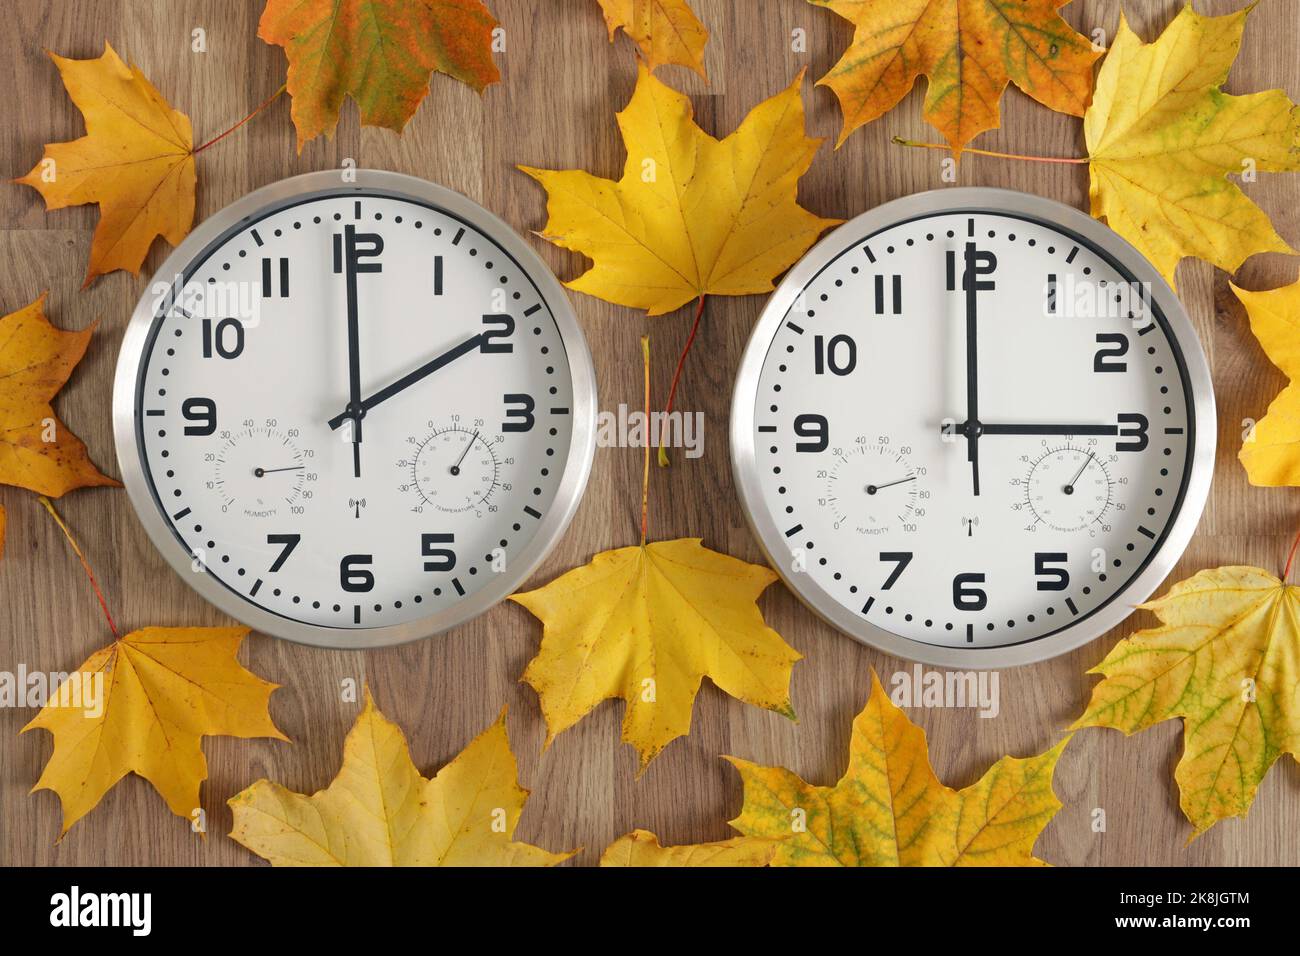 Zwei Uhren, eine auf zwei Uhr, die andere auf drei Uhr. Symbol für Zeitänderung. Herbstlaub. Stockfoto